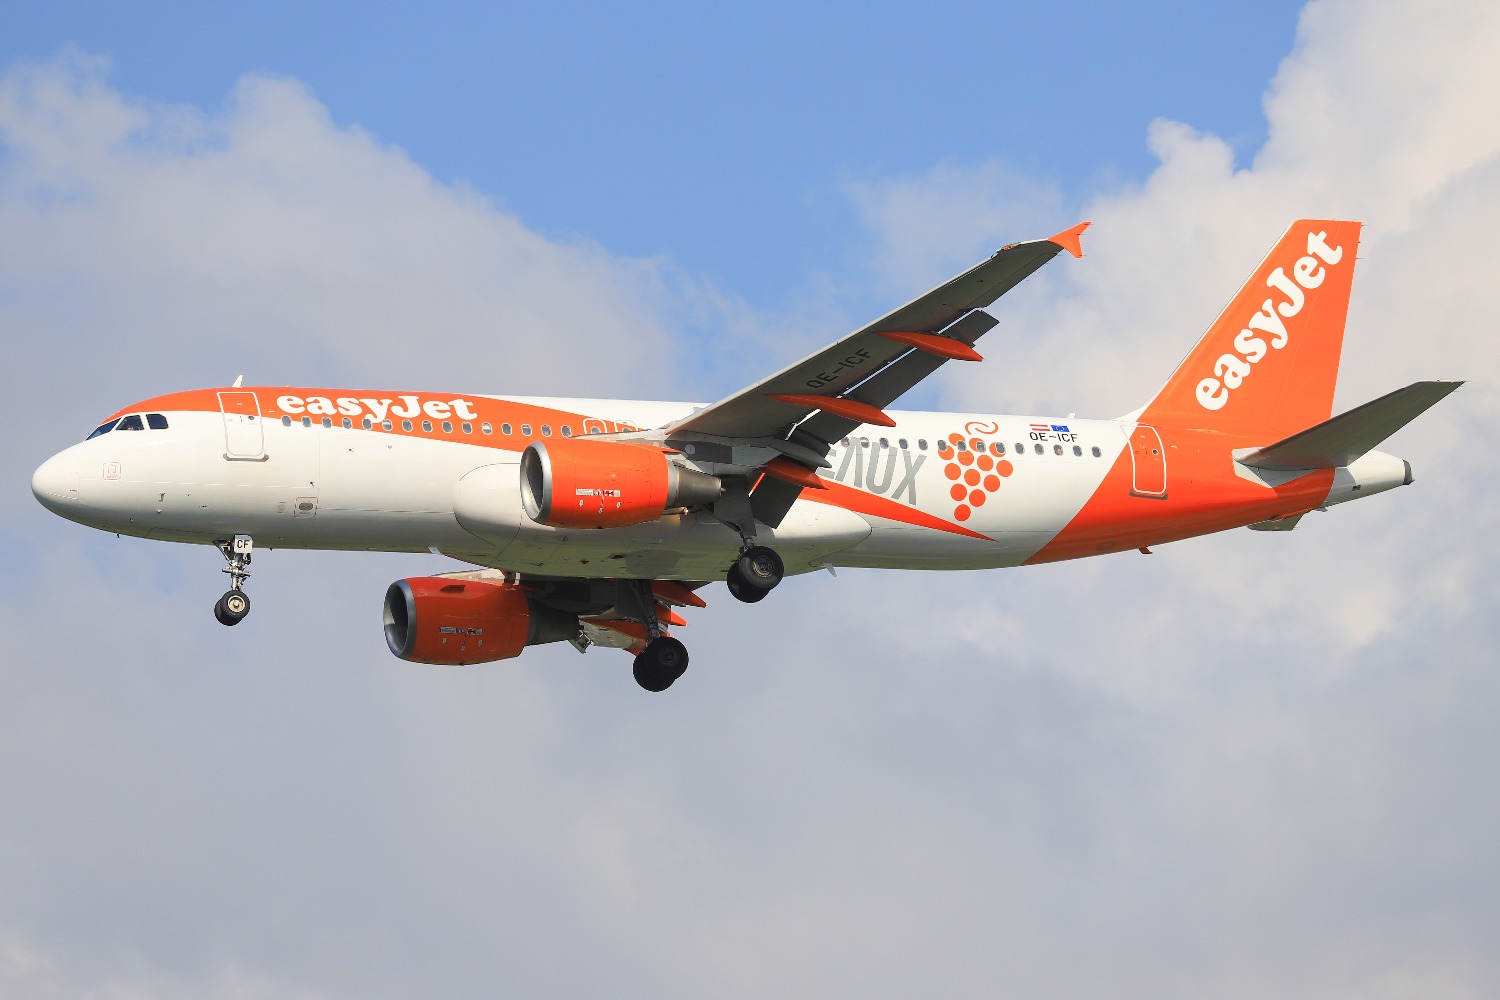 Пропал отпуск в Песах: EasyJet отменила рейсы из Израиля до конца апреля